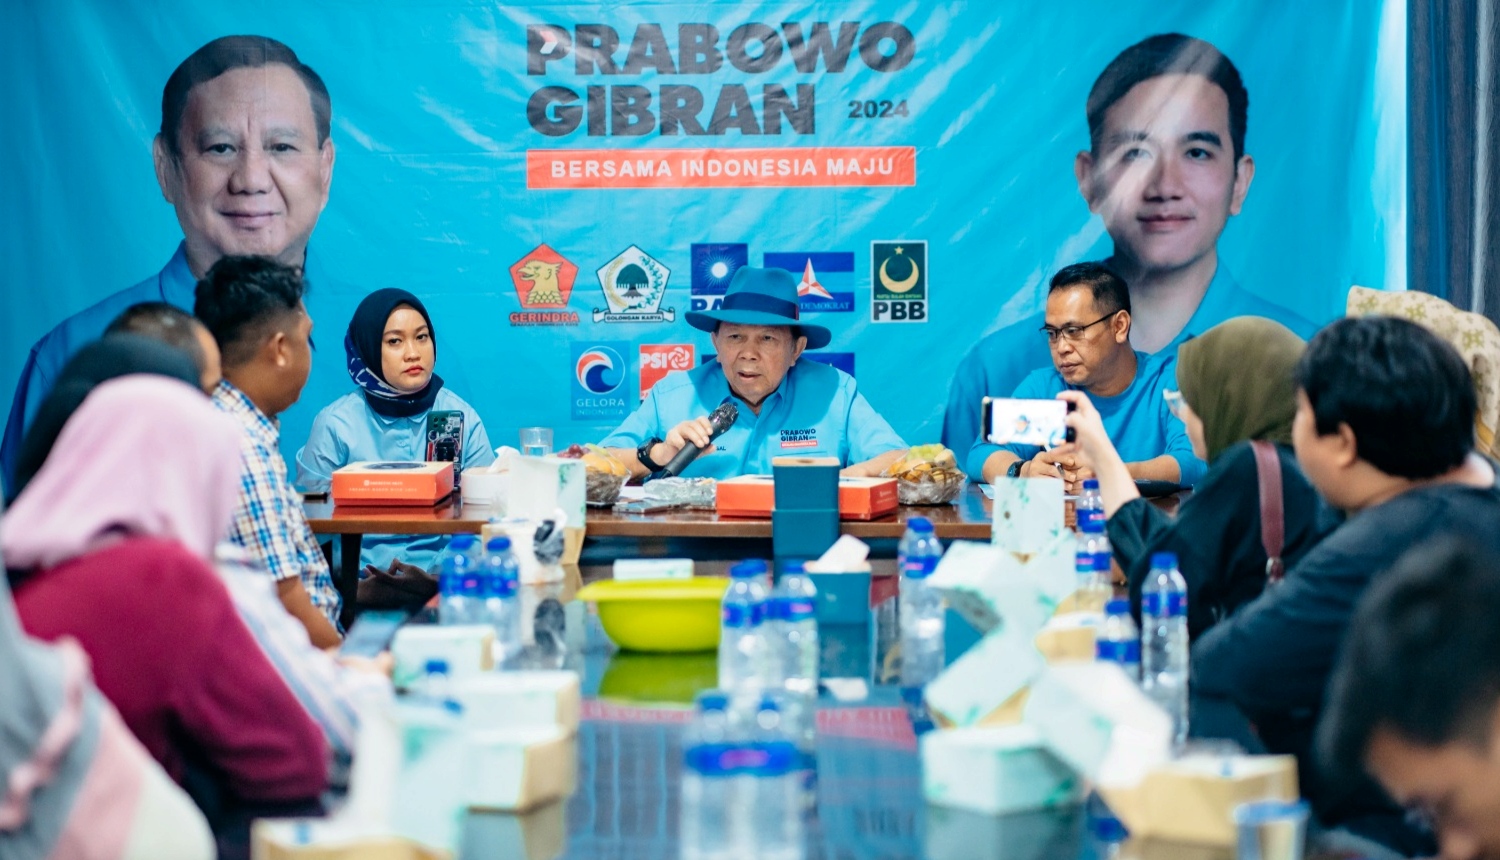 Soal Hasil Gugatan Sengketa Pilpres, Ketua TKD Prabowo-Gibran Lampung Ajak Masyarakat Bersatu